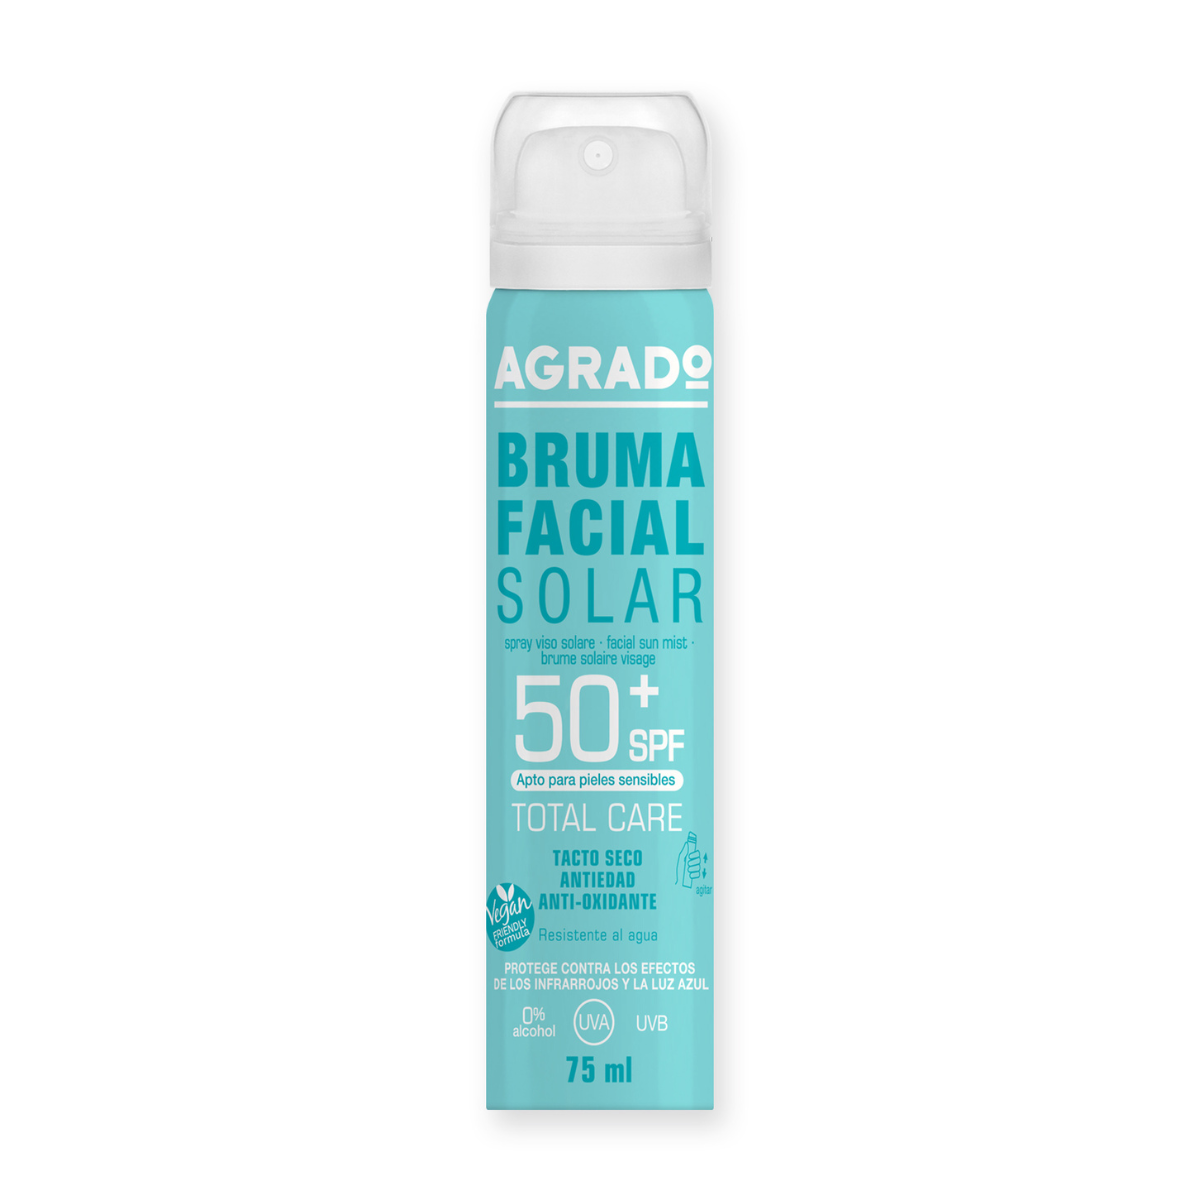 Bruma Facial Solar Spf50 Agrado 75 ml